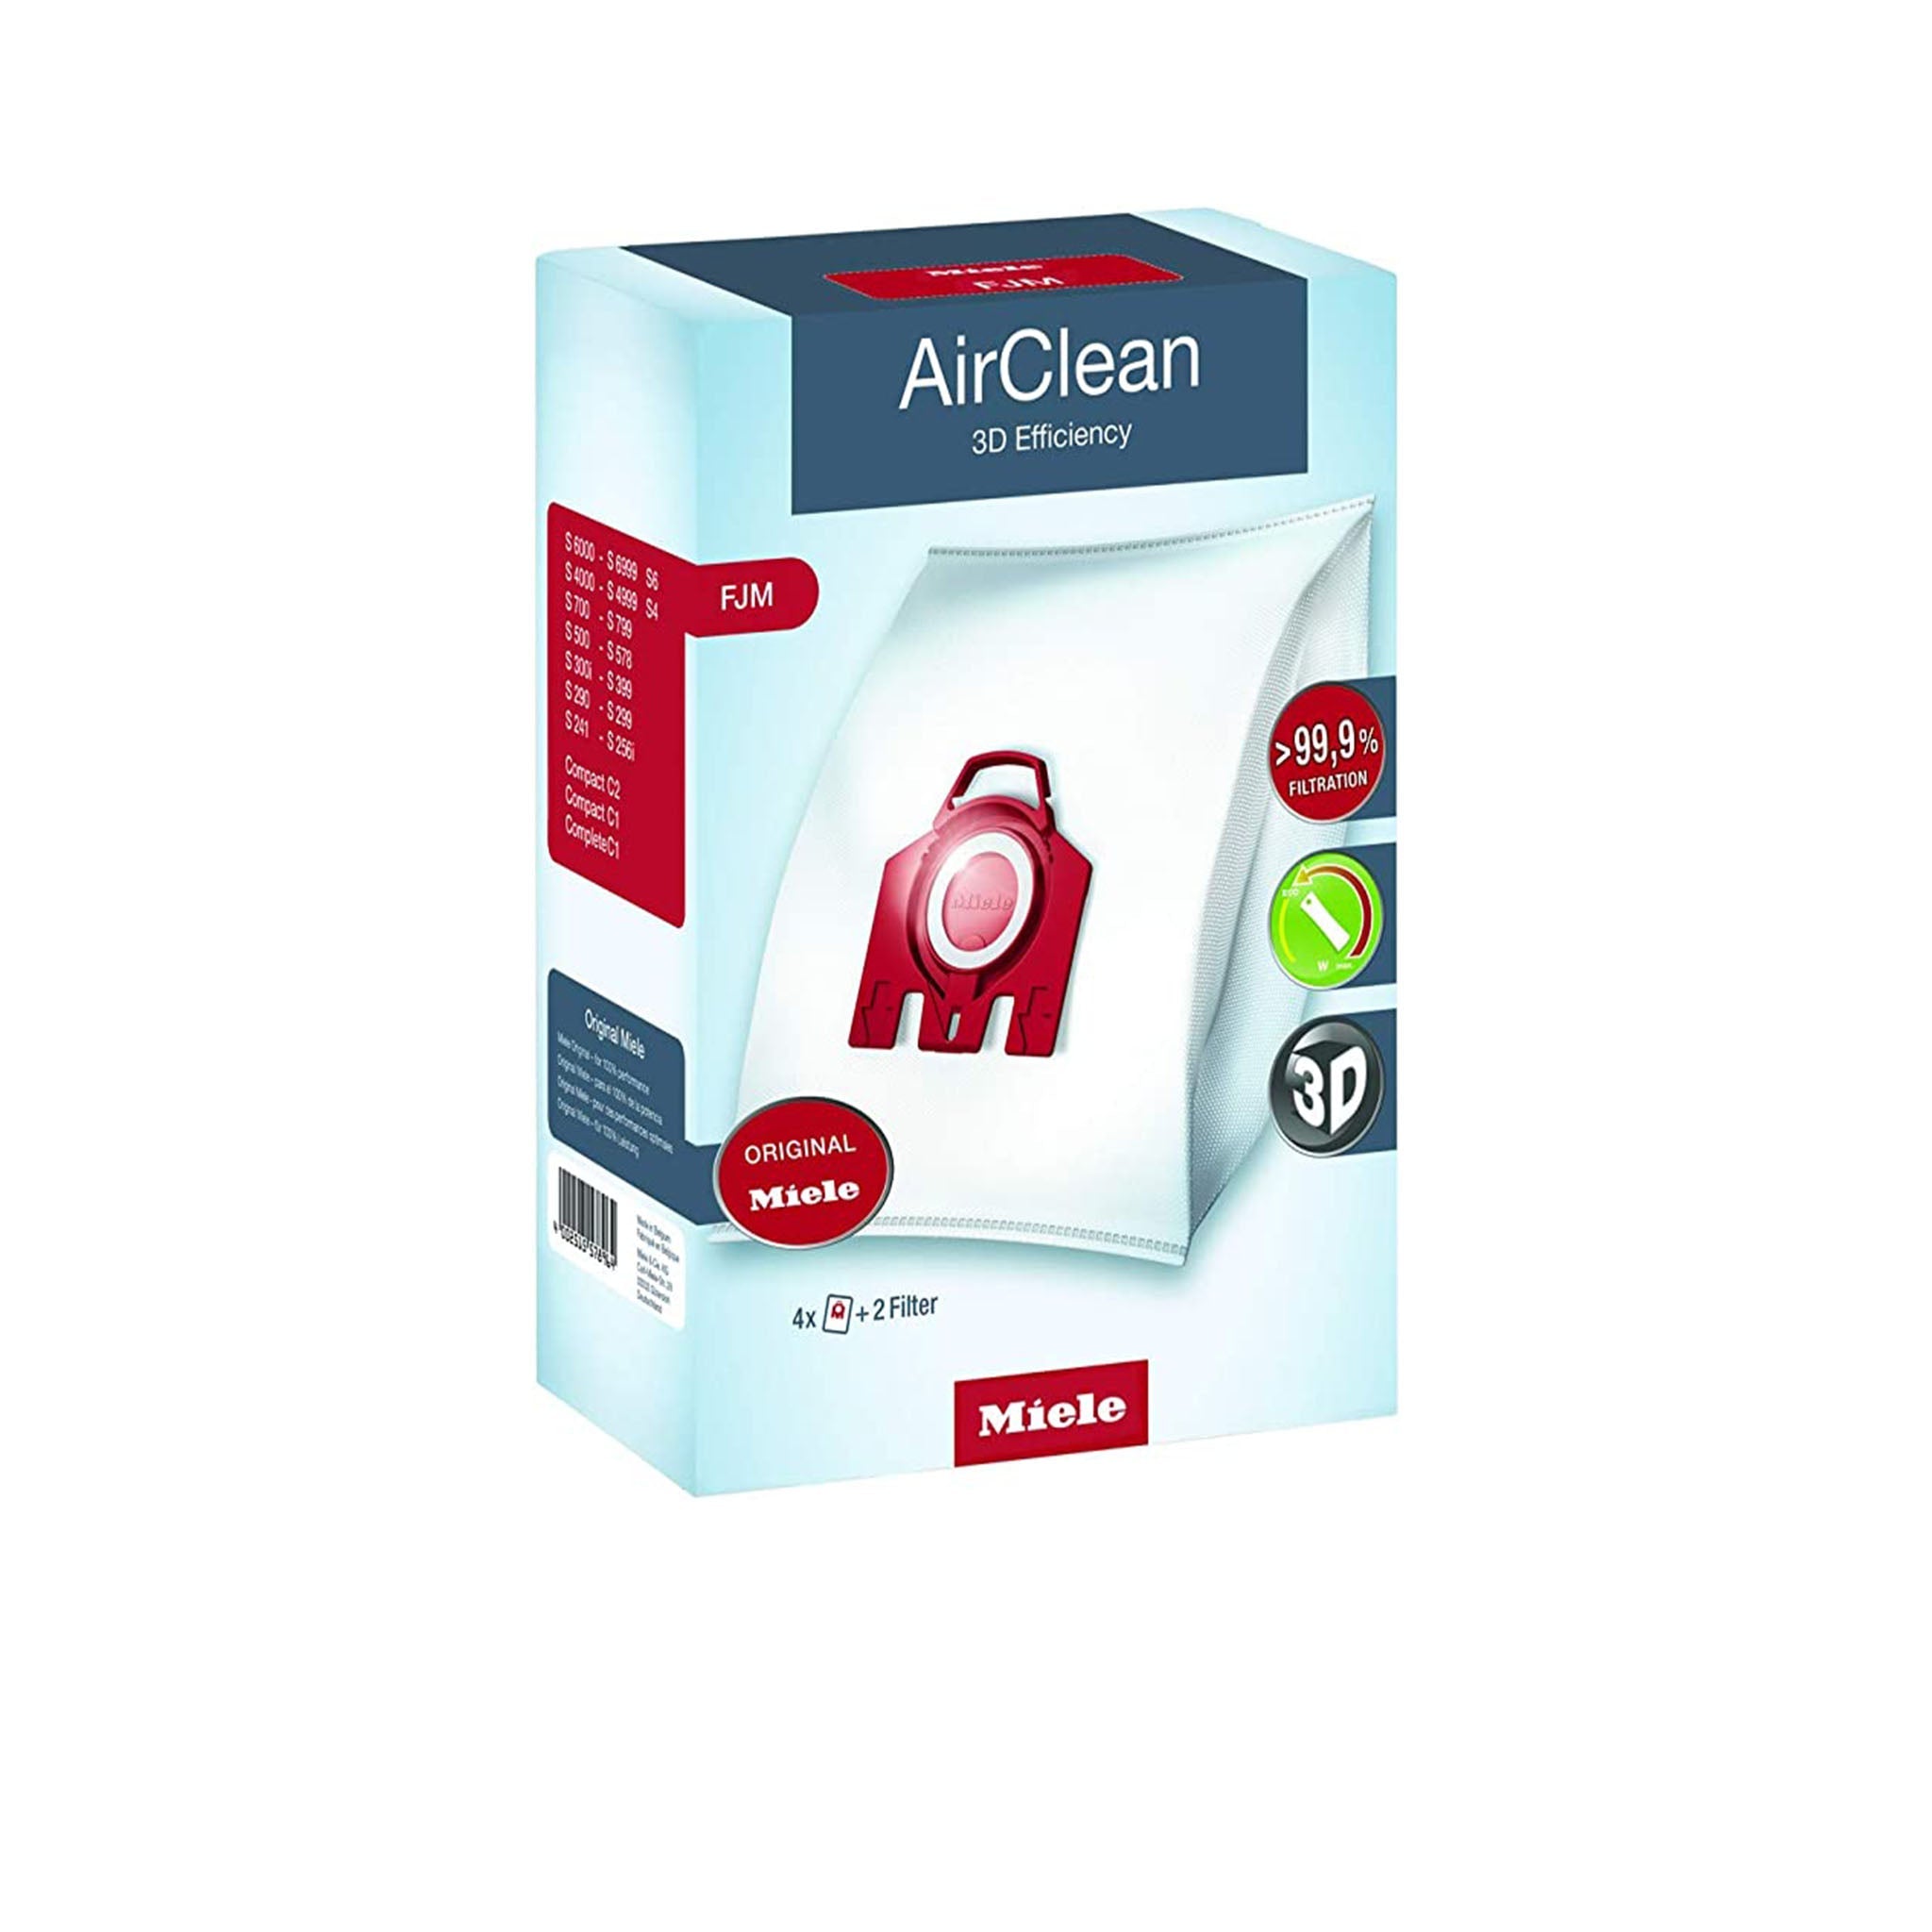 Bolsas de filtro de vacío AirClean 3D Efficiency de Miele (tipo FJM)